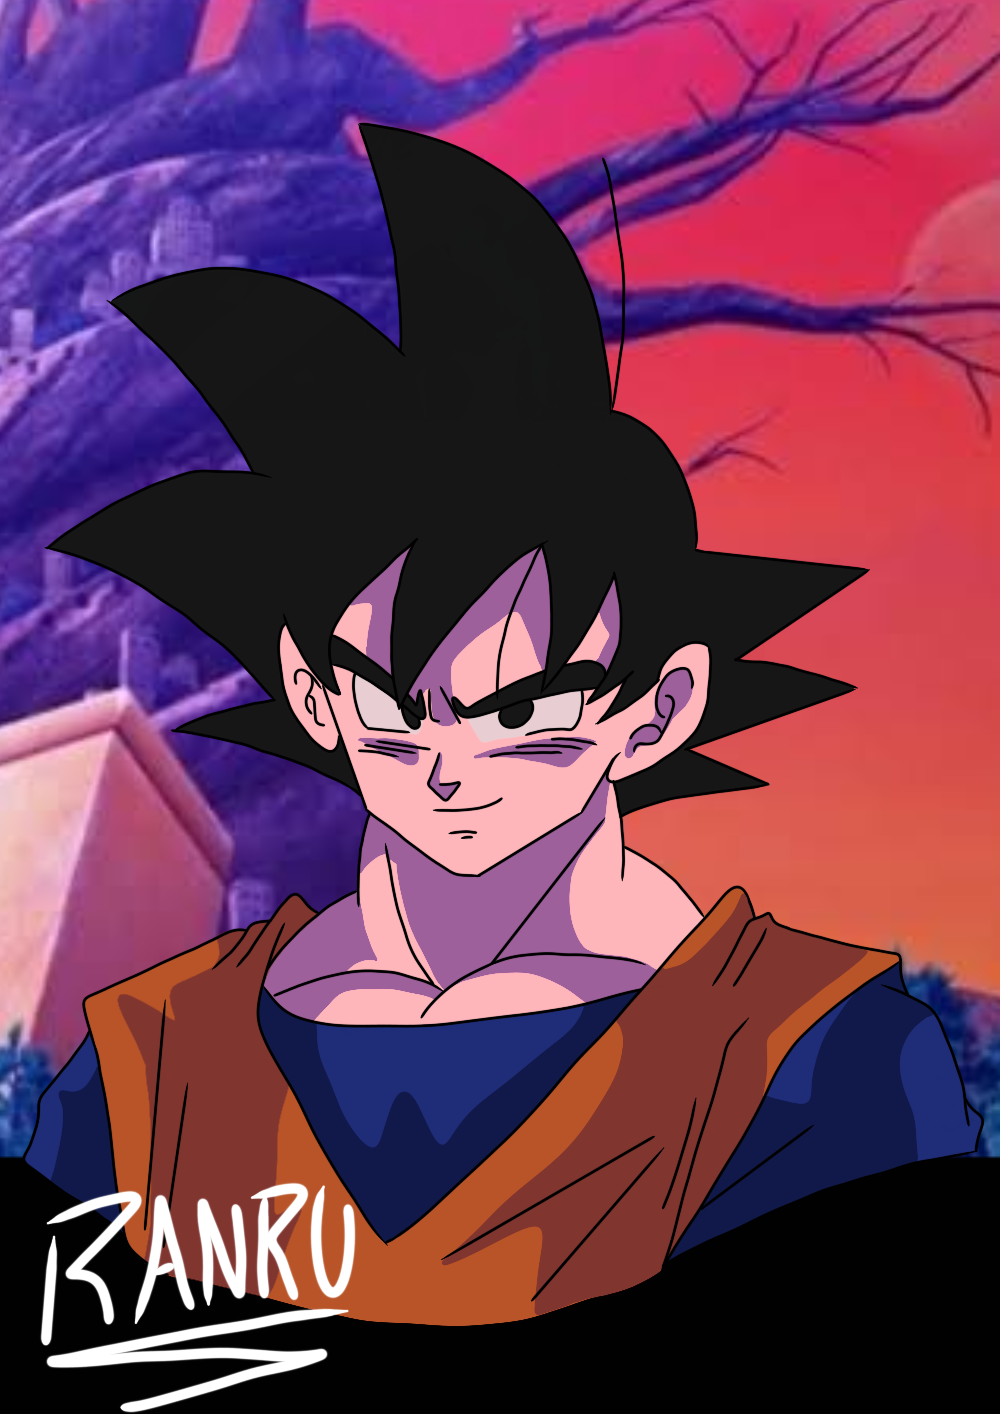 Goku Dragon Ball Super Super Hero by AkiraIchigo015 on DeviantArt